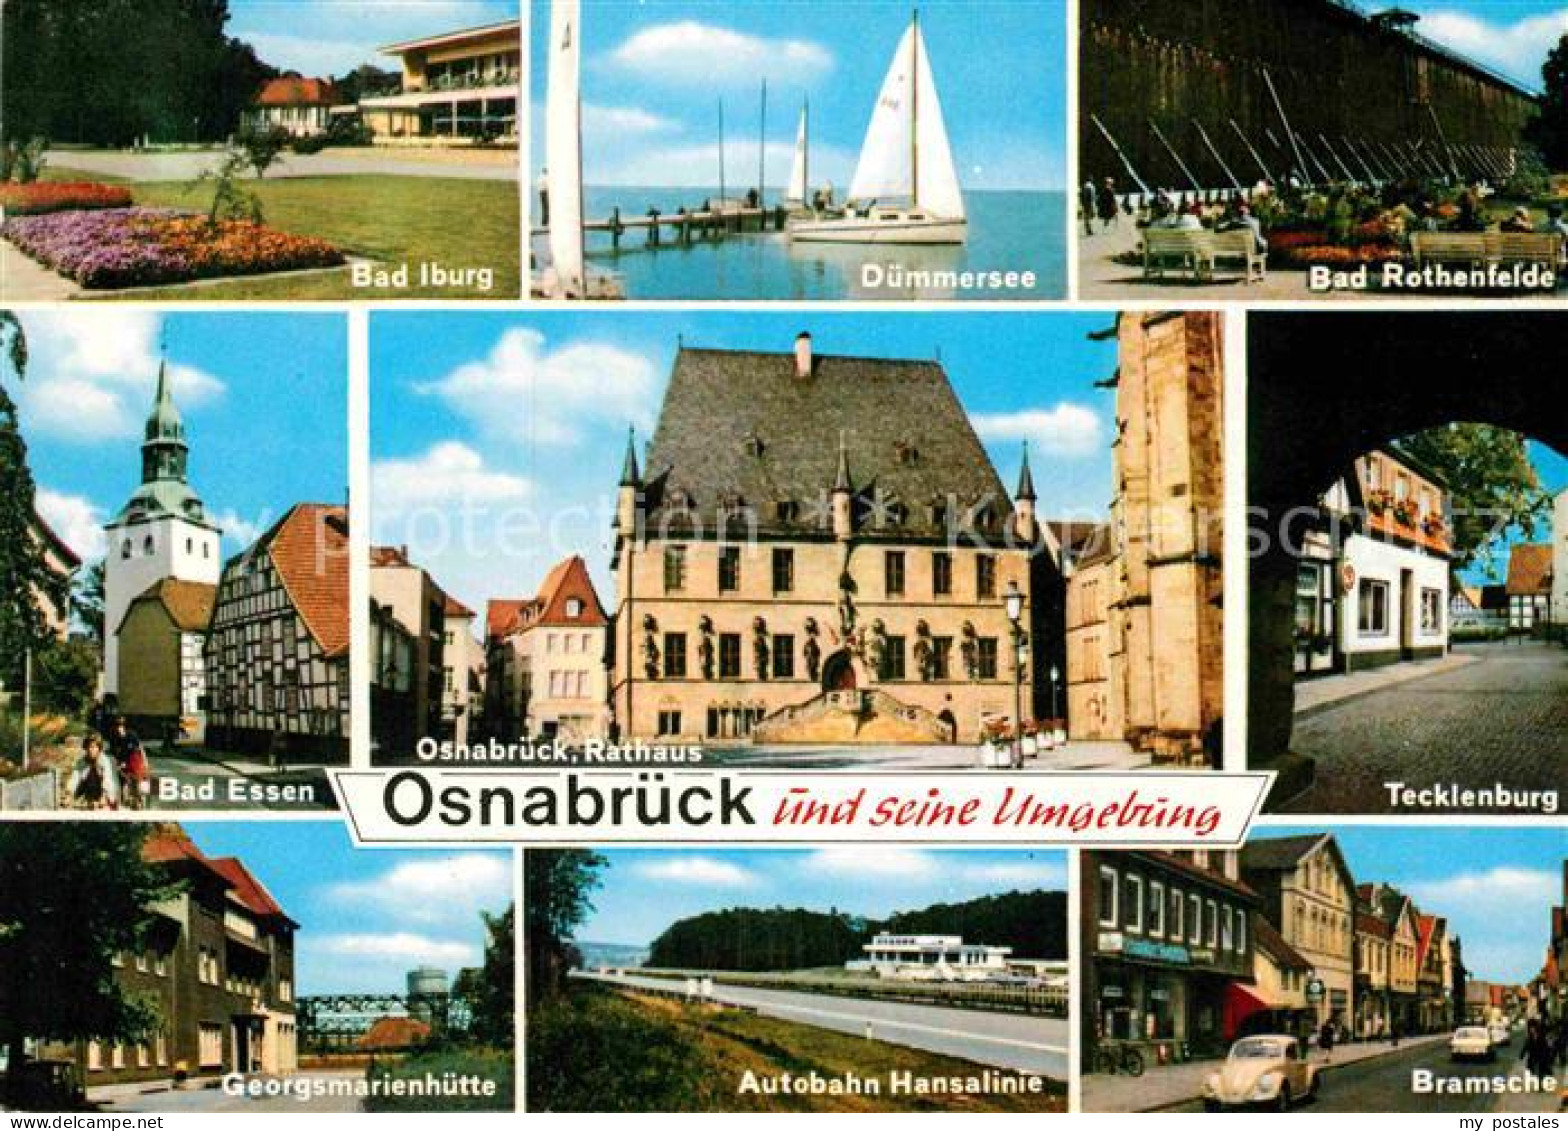 72869467 Osnabrueck Duemmersee Bad Iburg Tecklenburg Bramsche  Osnabrueck - Osnabrück